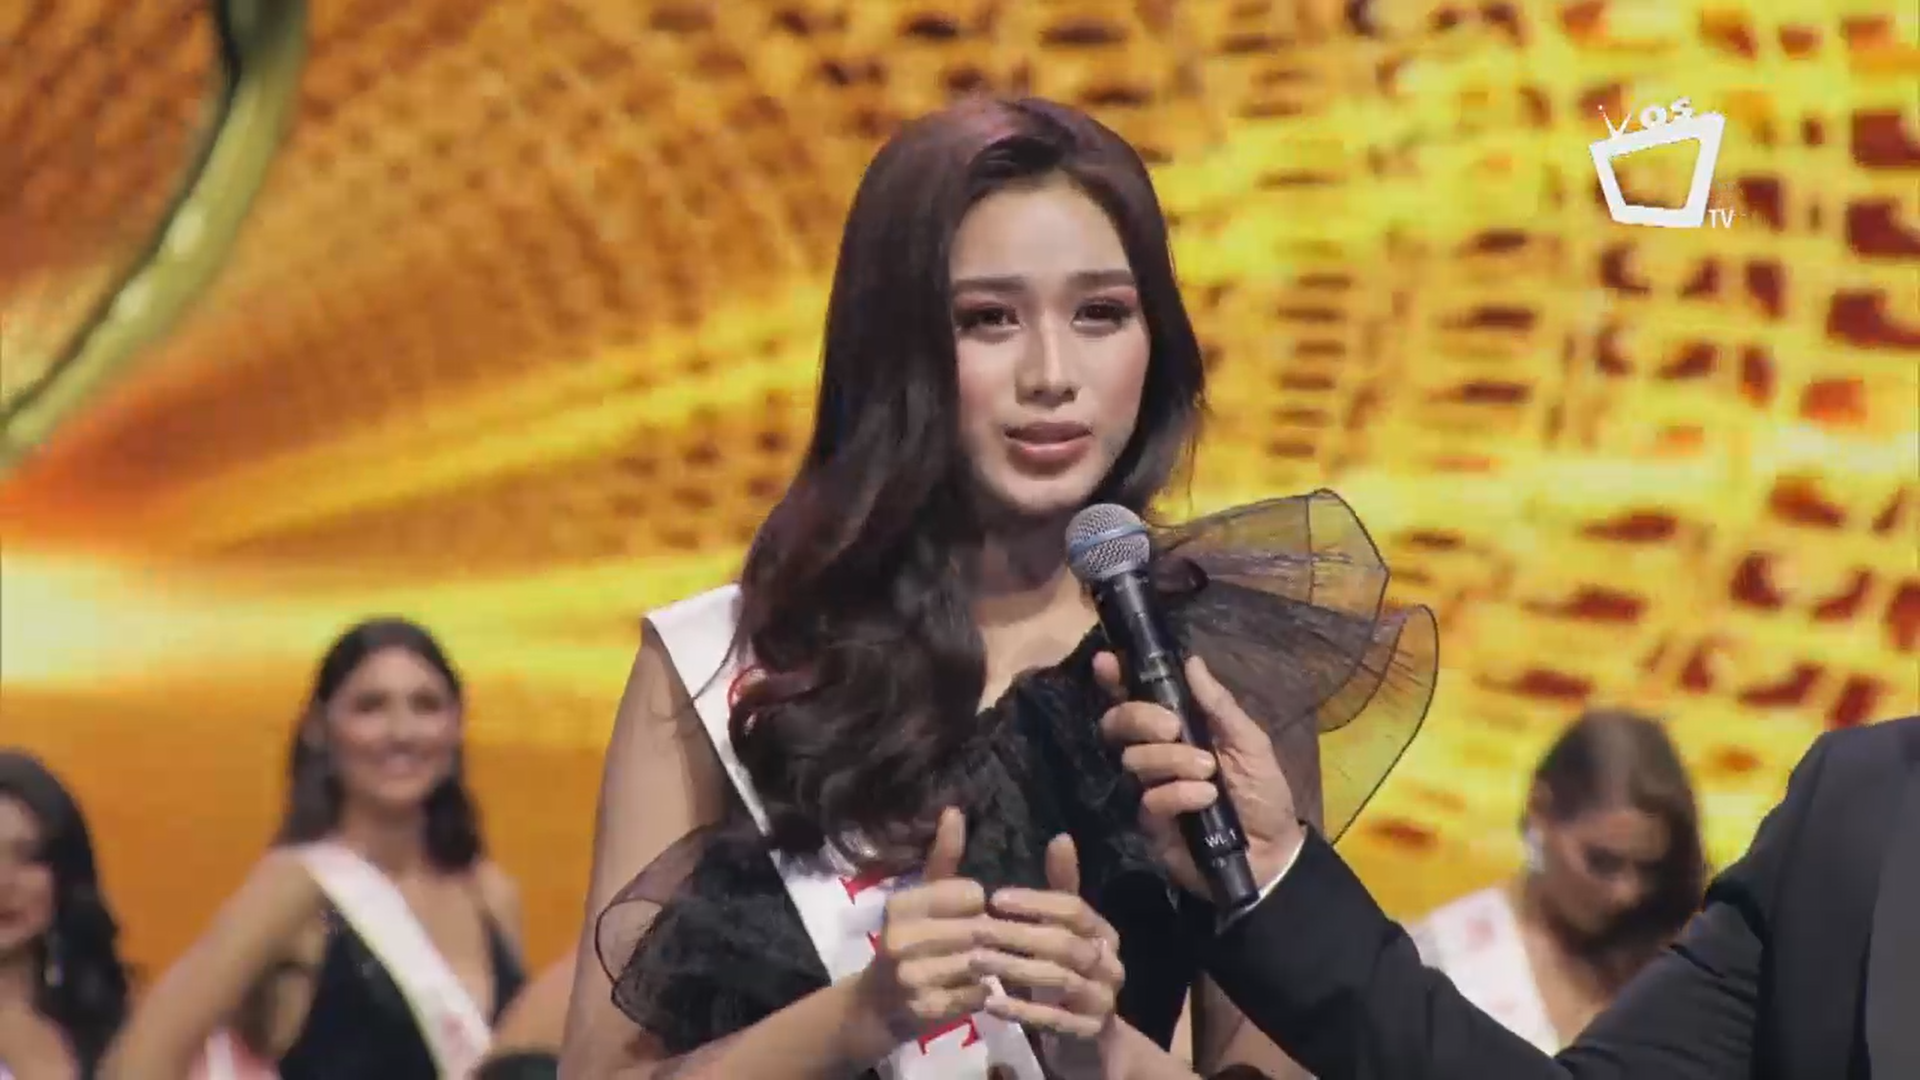 Hoa hậu Đỗ Thị Hà tỏa sáng trong đêm Chung kết trong chiếc váy màu đen.